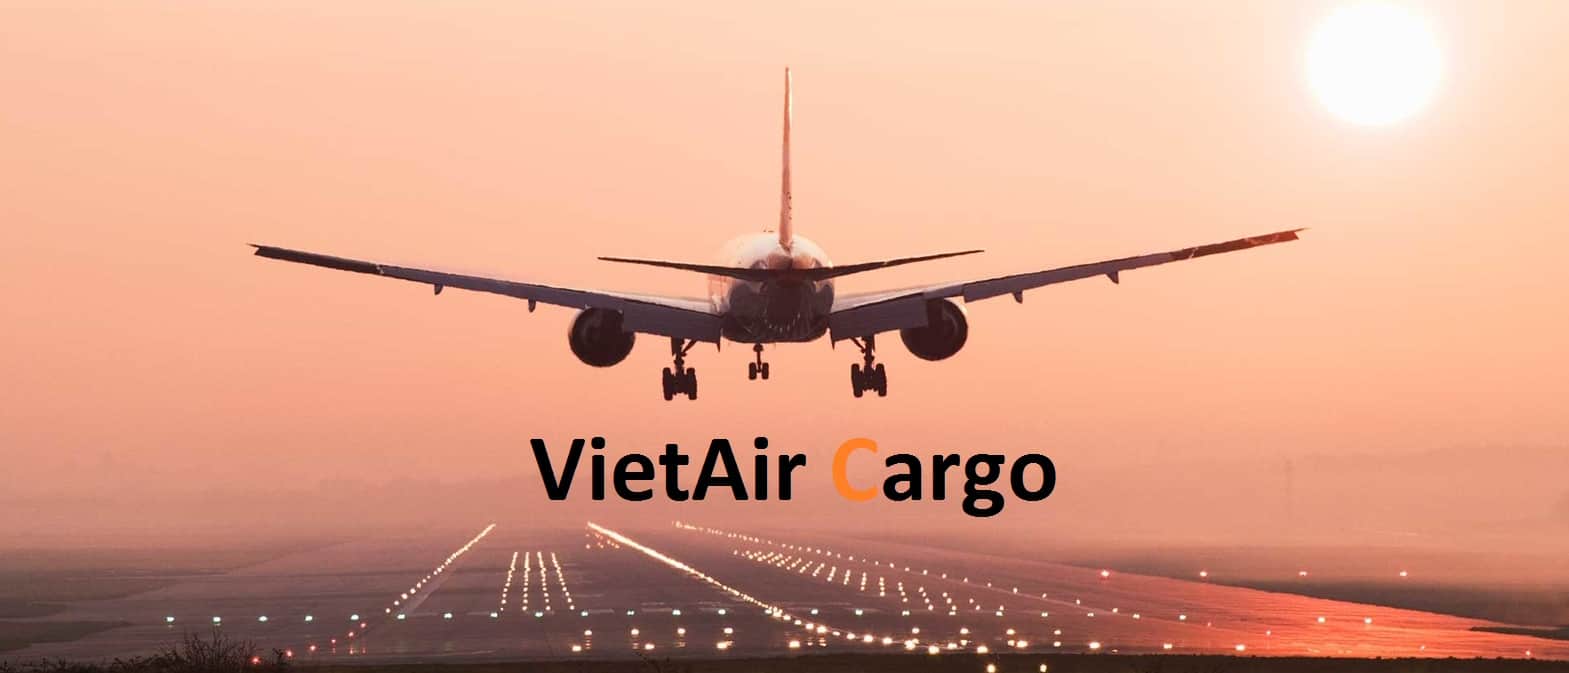 co-nen-ship-hang-my-gia-re-ve-viet-nam-tại-kentucky-voi-vietair-cargo-2-1 Có nên ship hàng Mỹ giá rẻ từ Kentucky về Việt Nam tại VietAir Cargo?